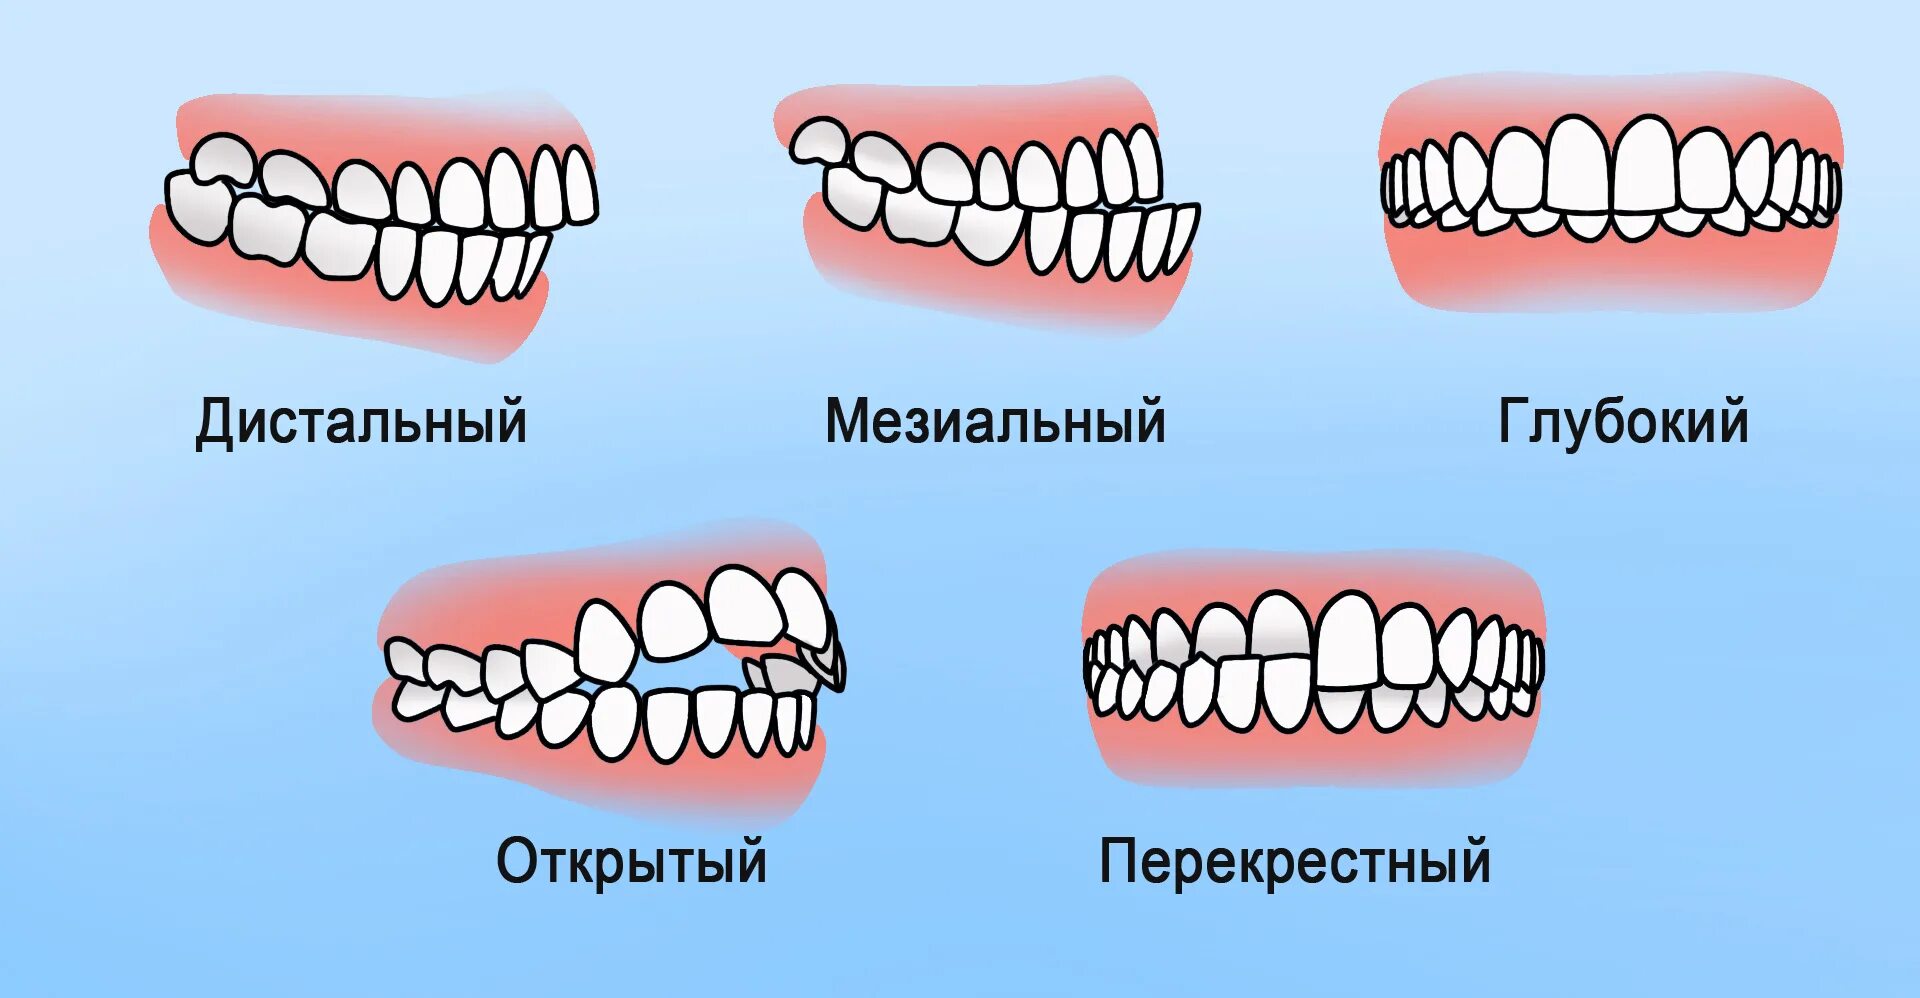 Ковид зубова. Правильный и неправильный прикус и челюсть. Правильный прикус зубов у человека. Правильный прикус зубов у человека и неправильный. Прикус зубов правильный прикус.